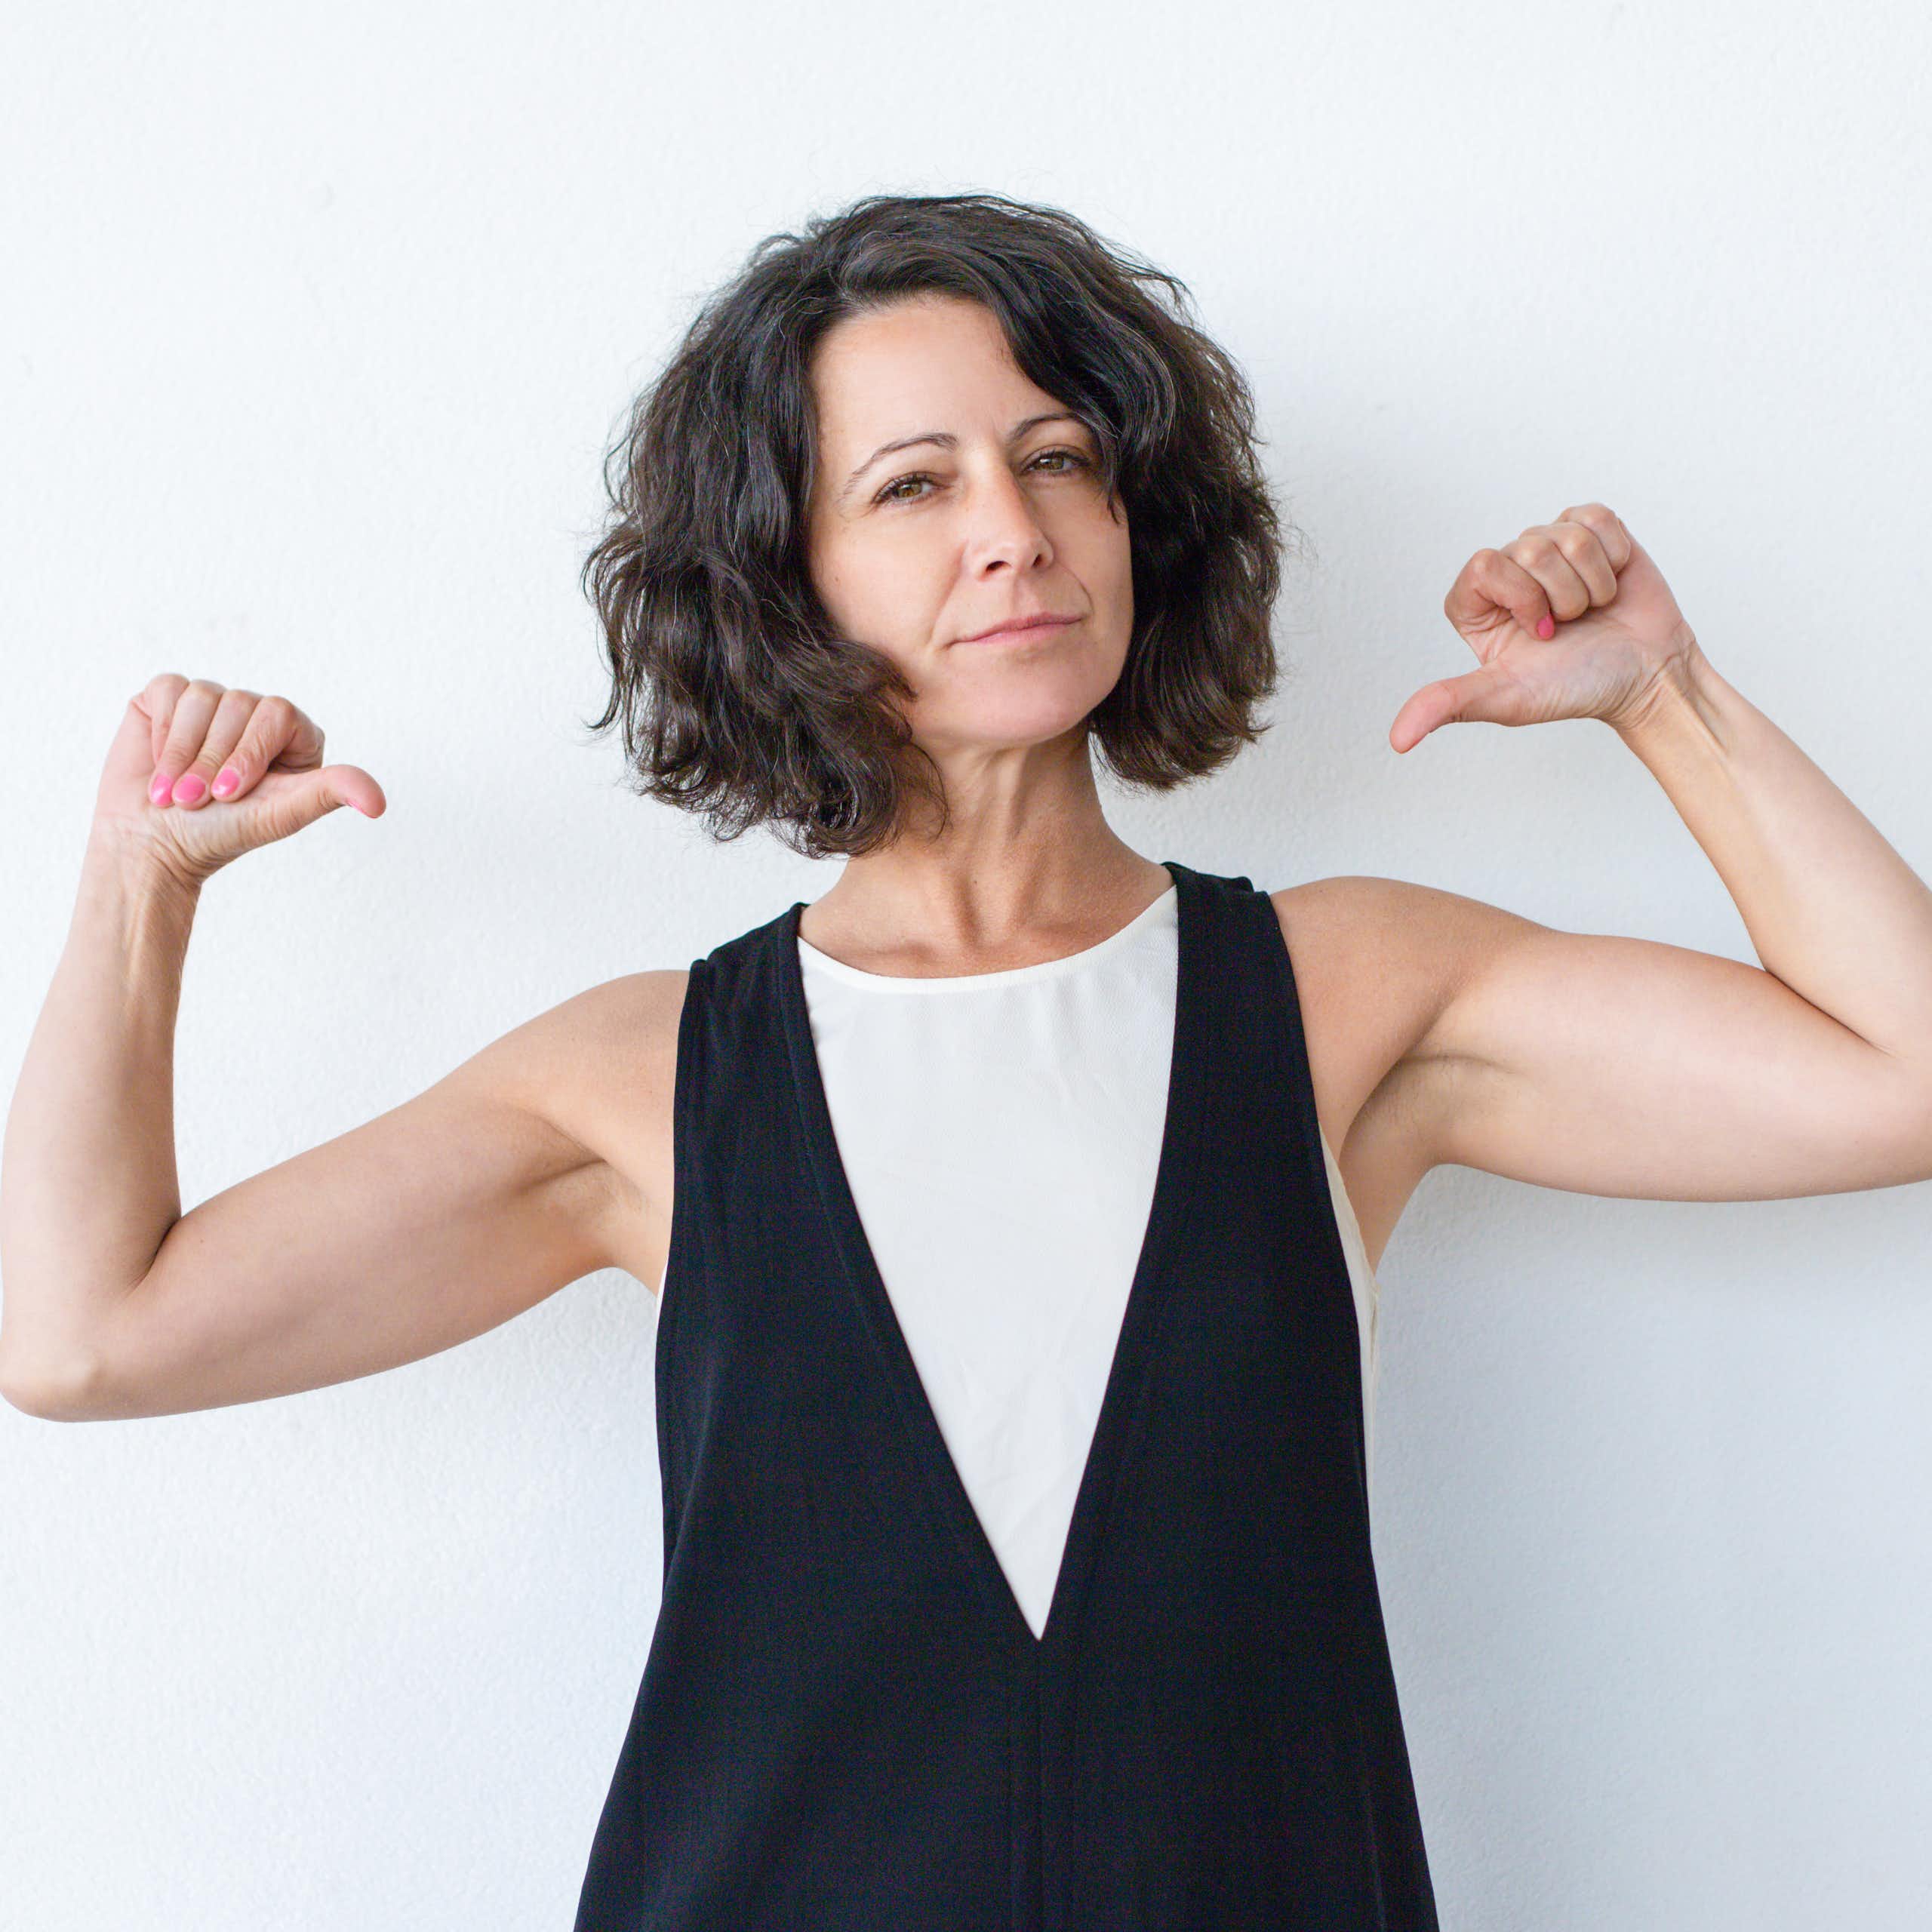 La revolución de la menopausia: propuestas para romper el estigma